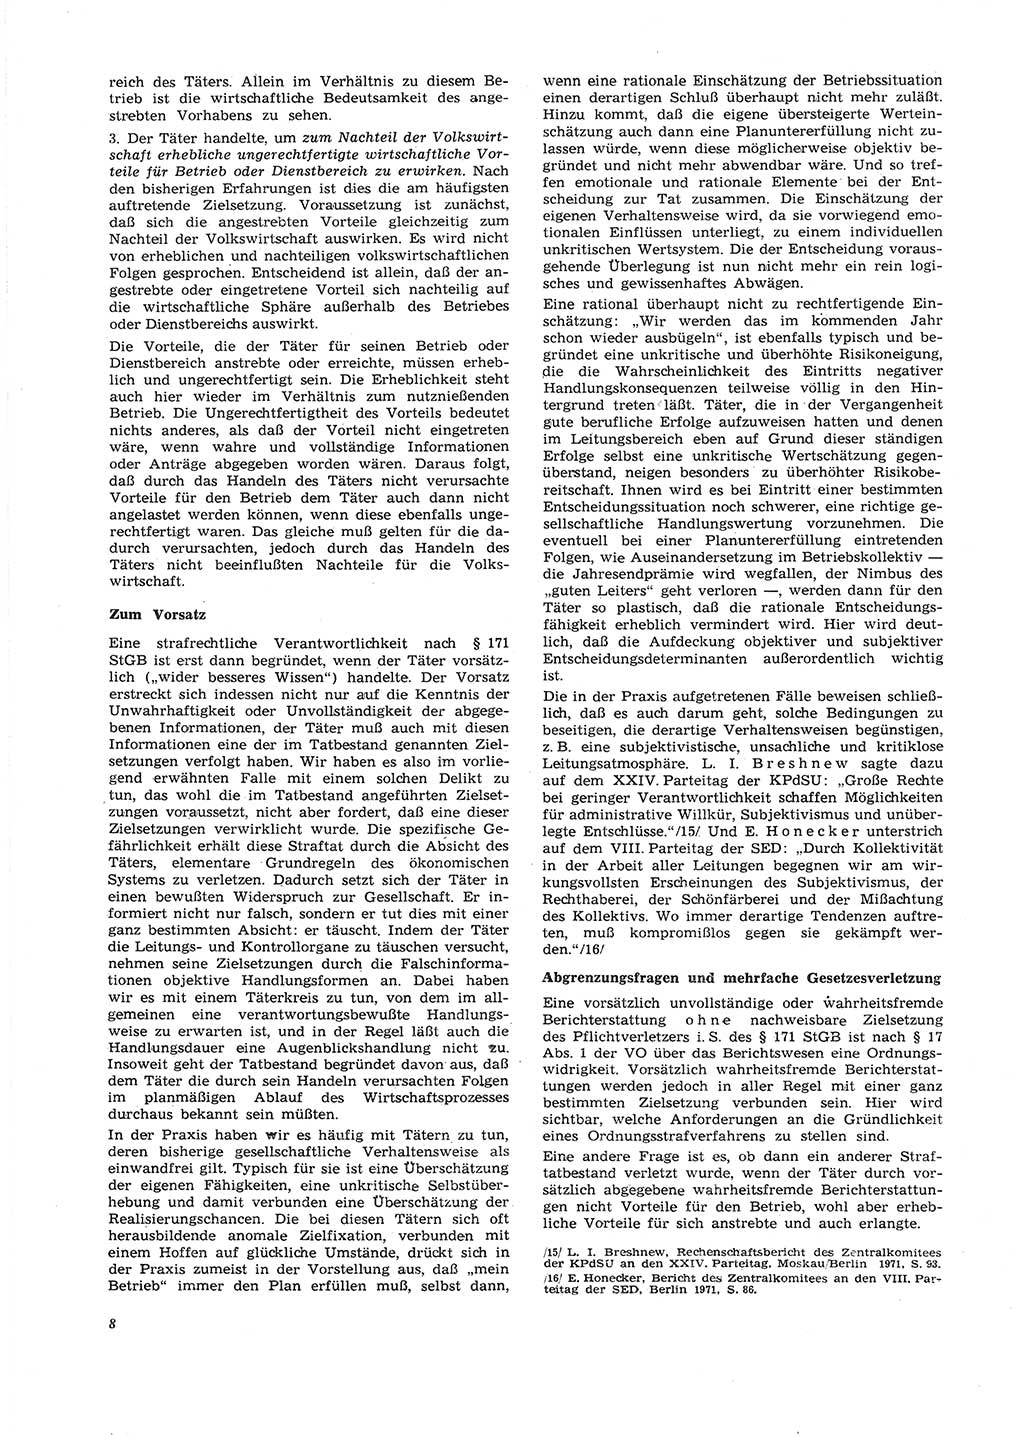 Neue Justiz (NJ), Zeitschrift für Recht und Rechtswissenschaft [Deutsche Demokratische Republik (DDR)], 26. Jahrgang 1972, Seite 8 (NJ DDR 1972, S. 8)